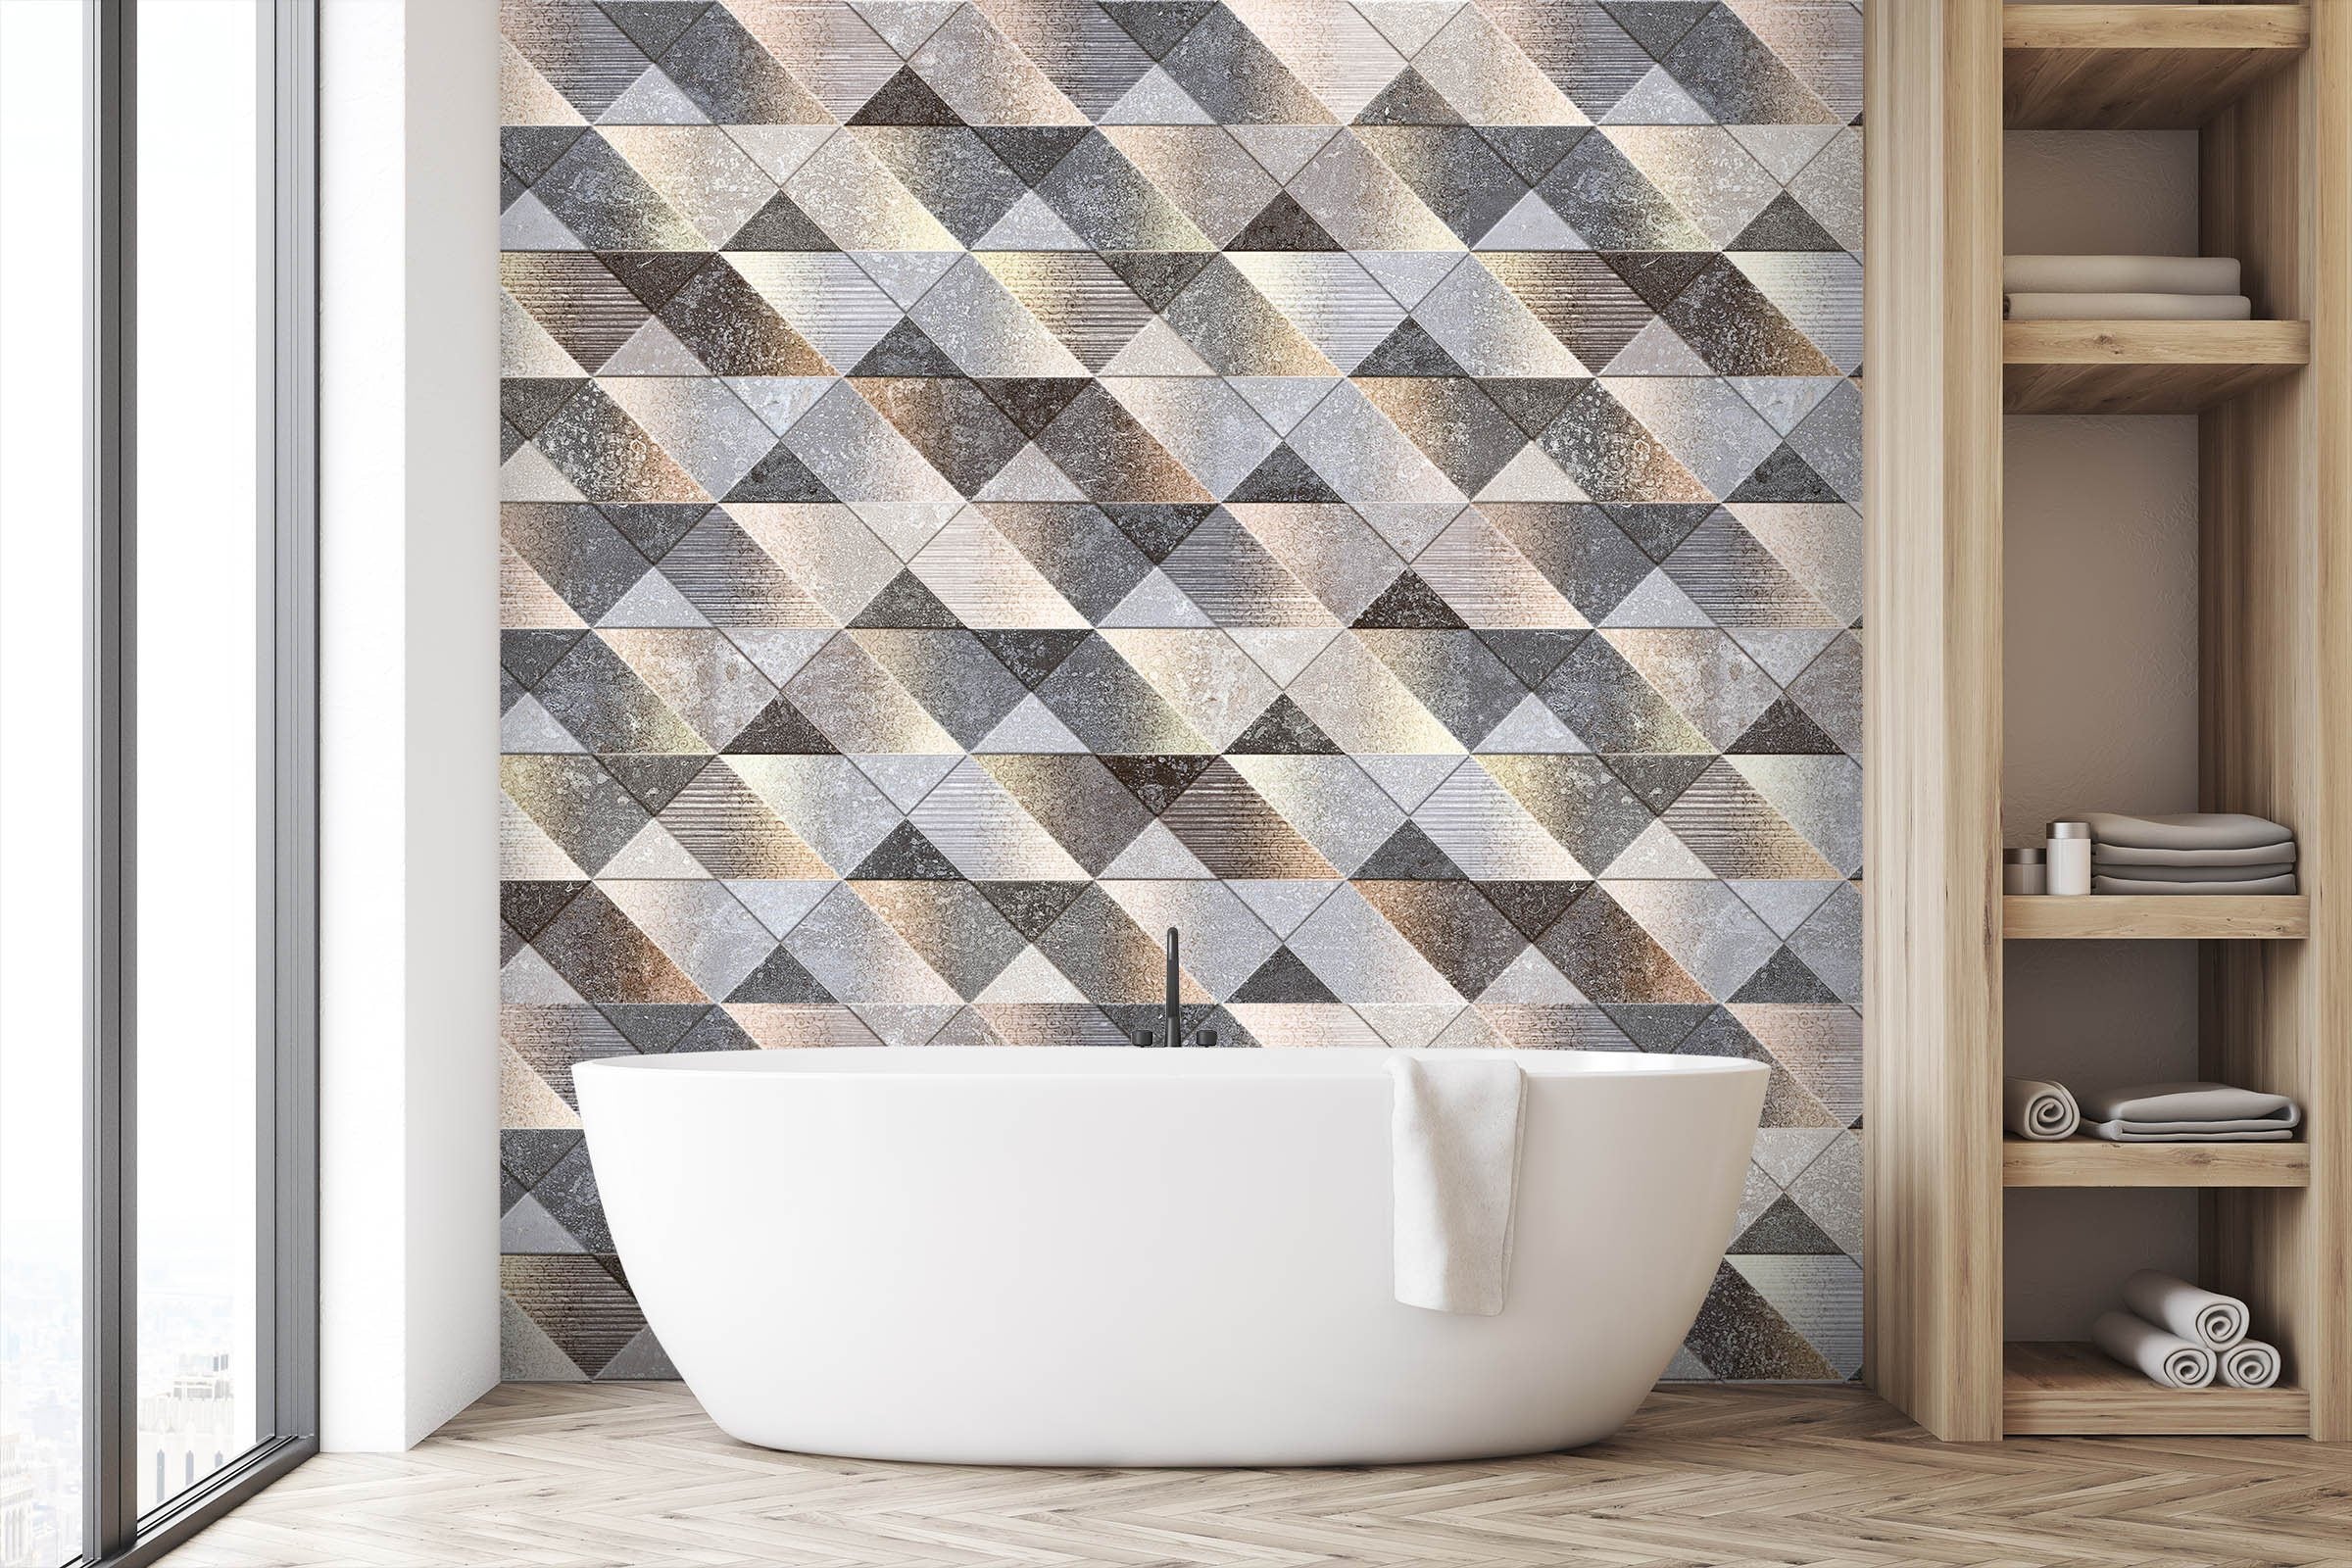 3D Modern Fashion 069 Marble Tile Texture Wallpaper AJ Wallpaper 2 